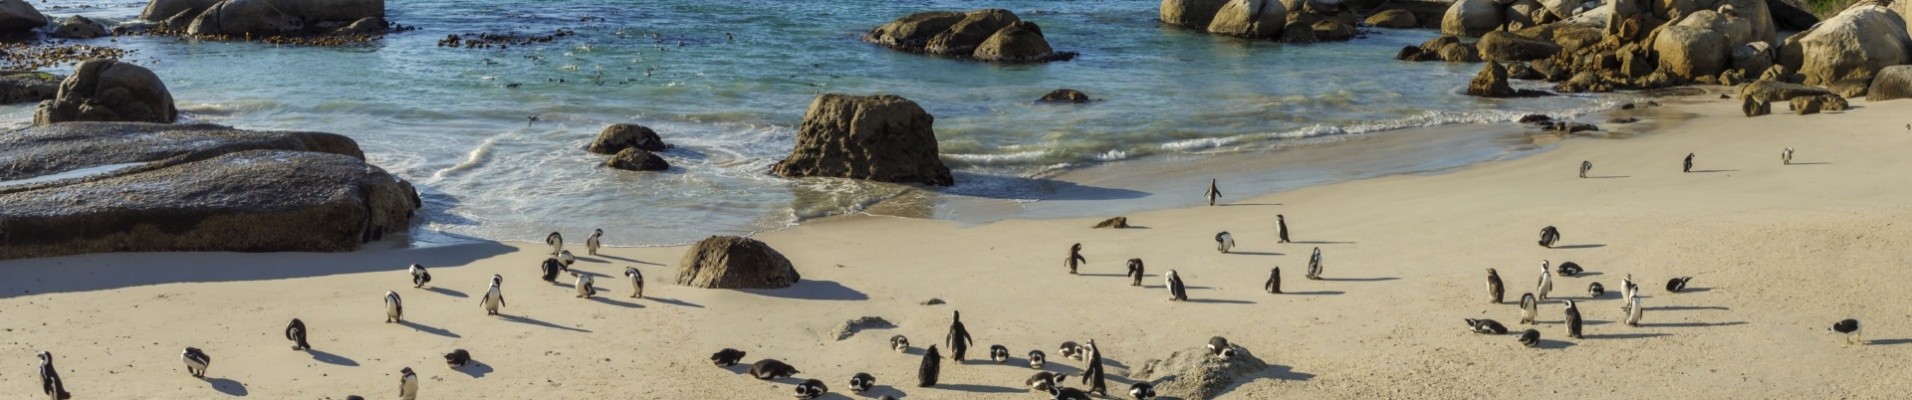 Le-cap- paysage-plage-pingouin